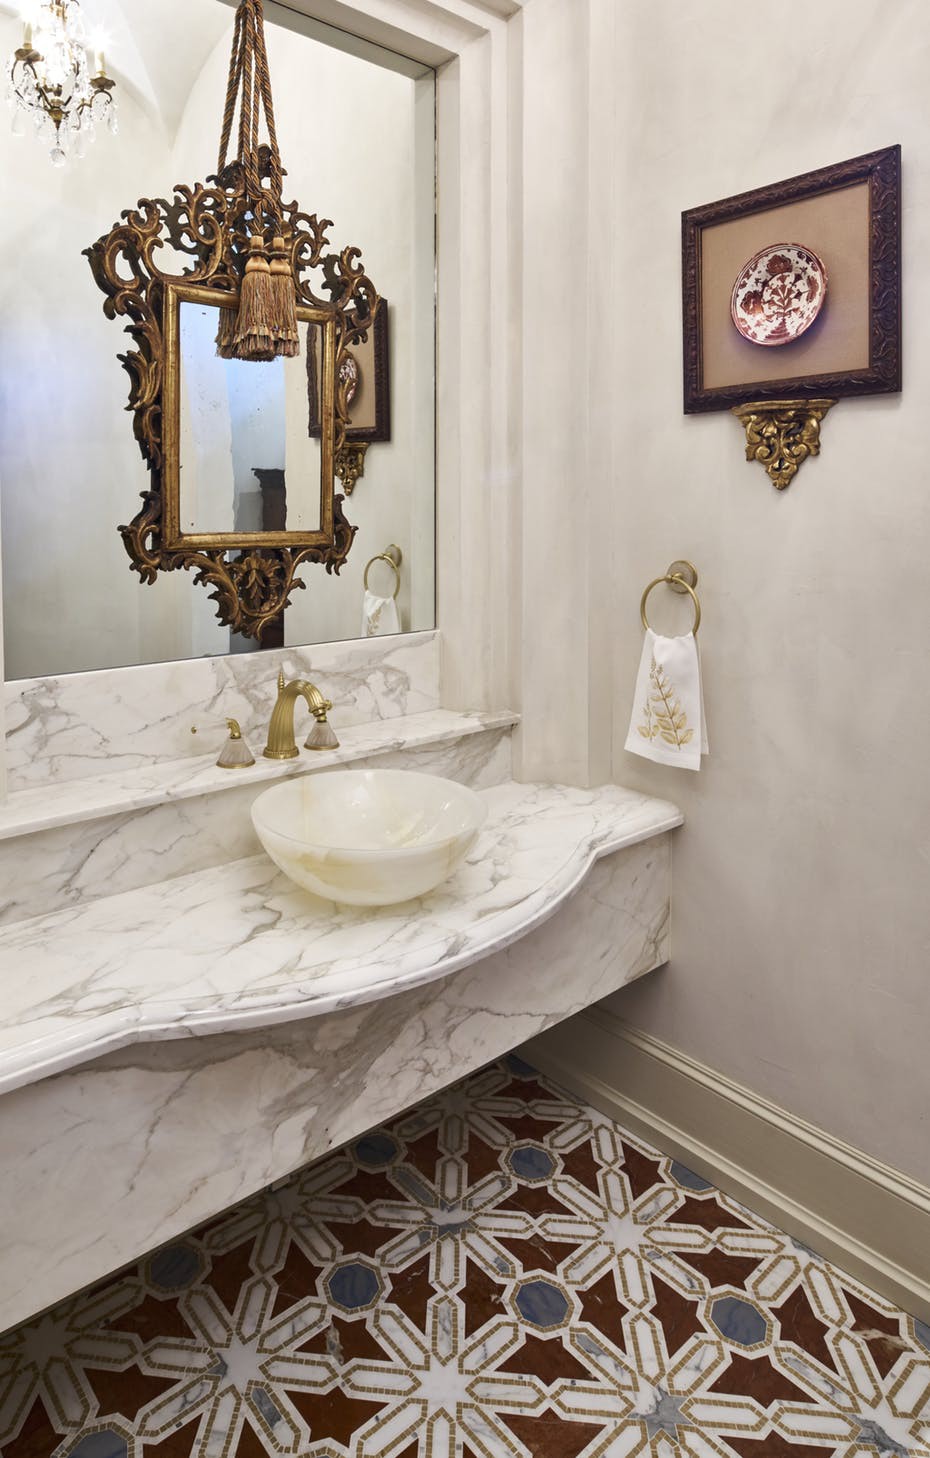 Hình ảnh bồn rửa tay trong phòng tắm ốp đá cẩm thạch, gương cổ điển, gạch bông lát sàn